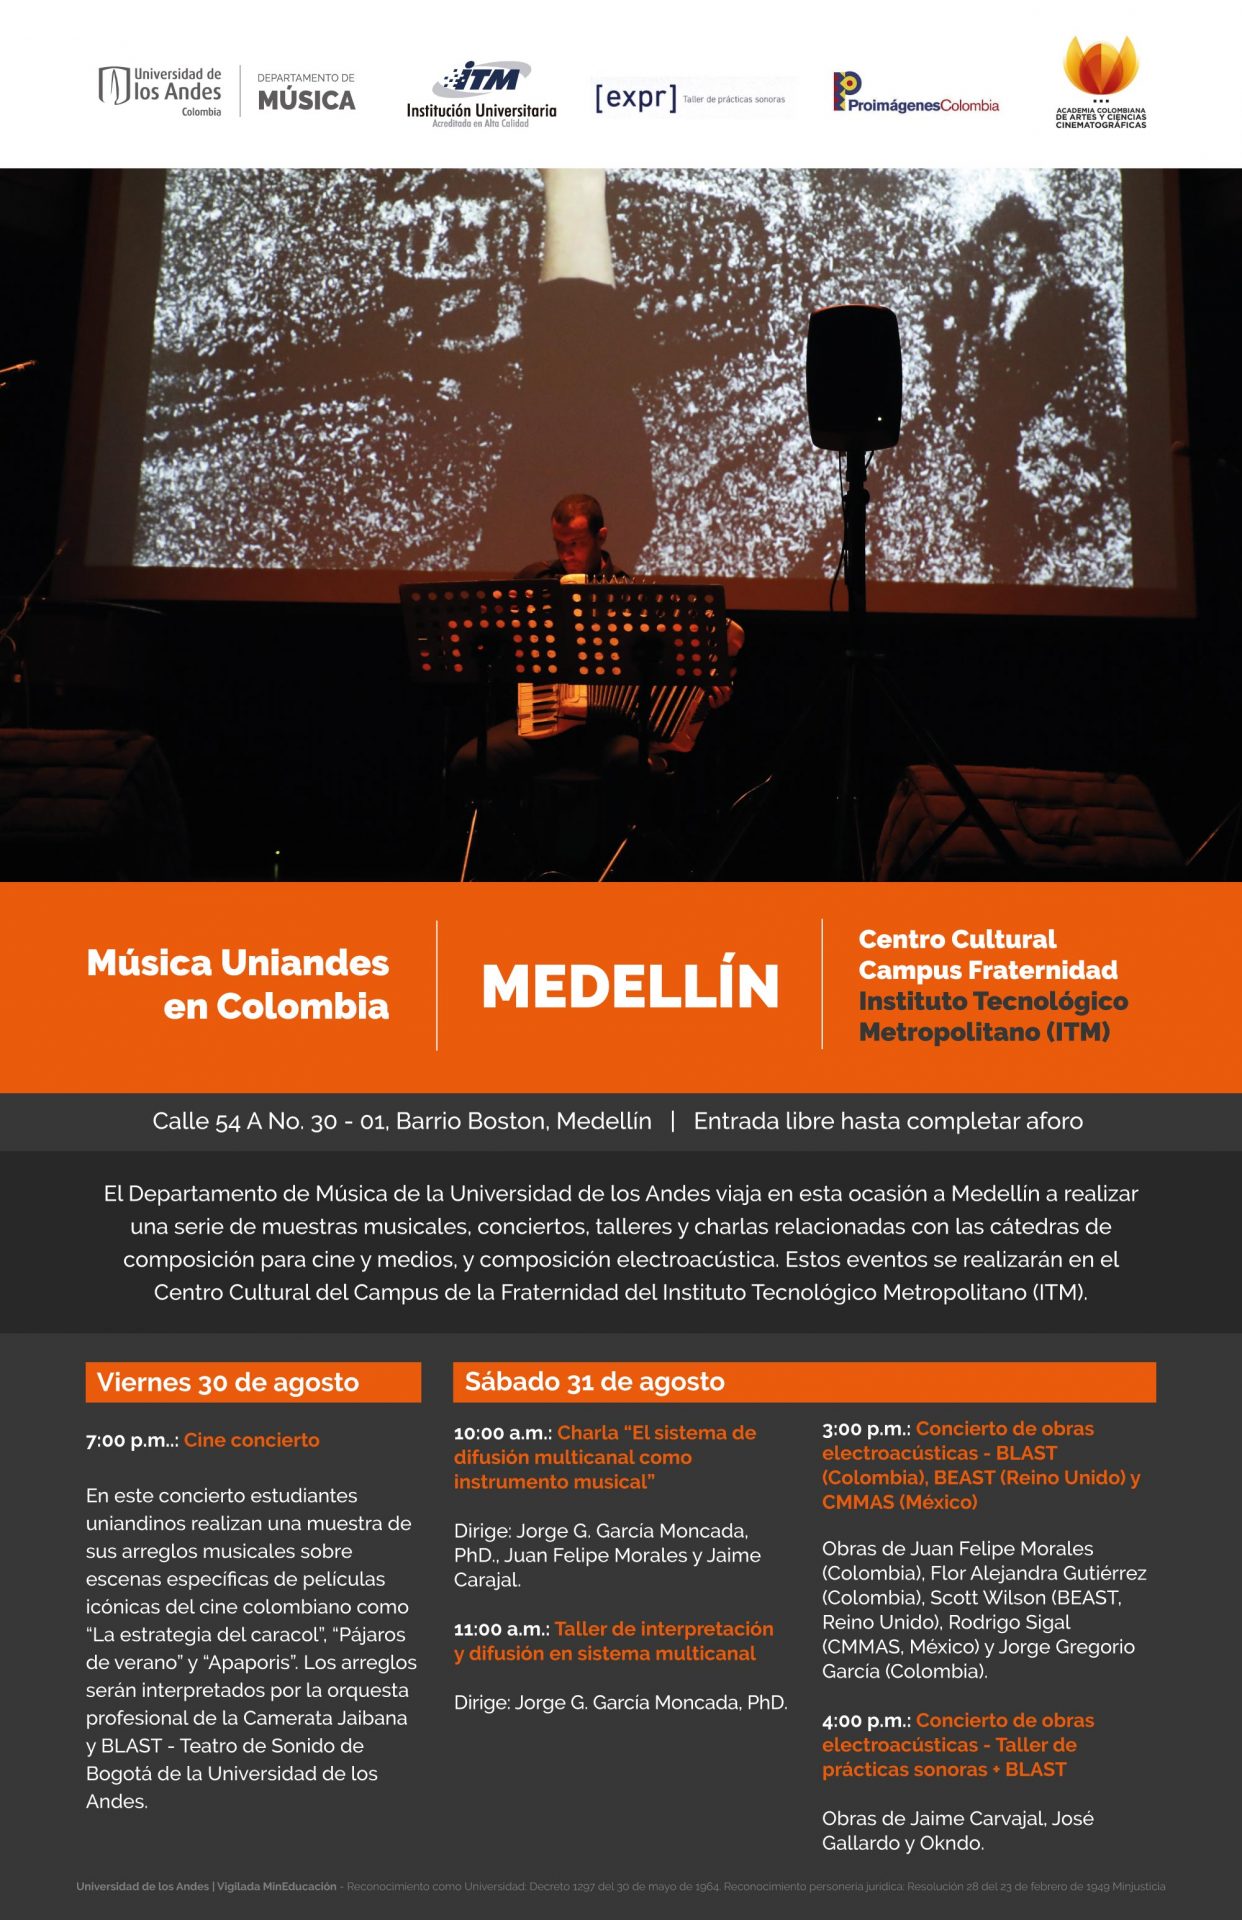 El Departamento de Música de la Universidad de los Andes viaja a Medellín a realizar una serie de muestras musicales, conciertos, talleres y charlas.